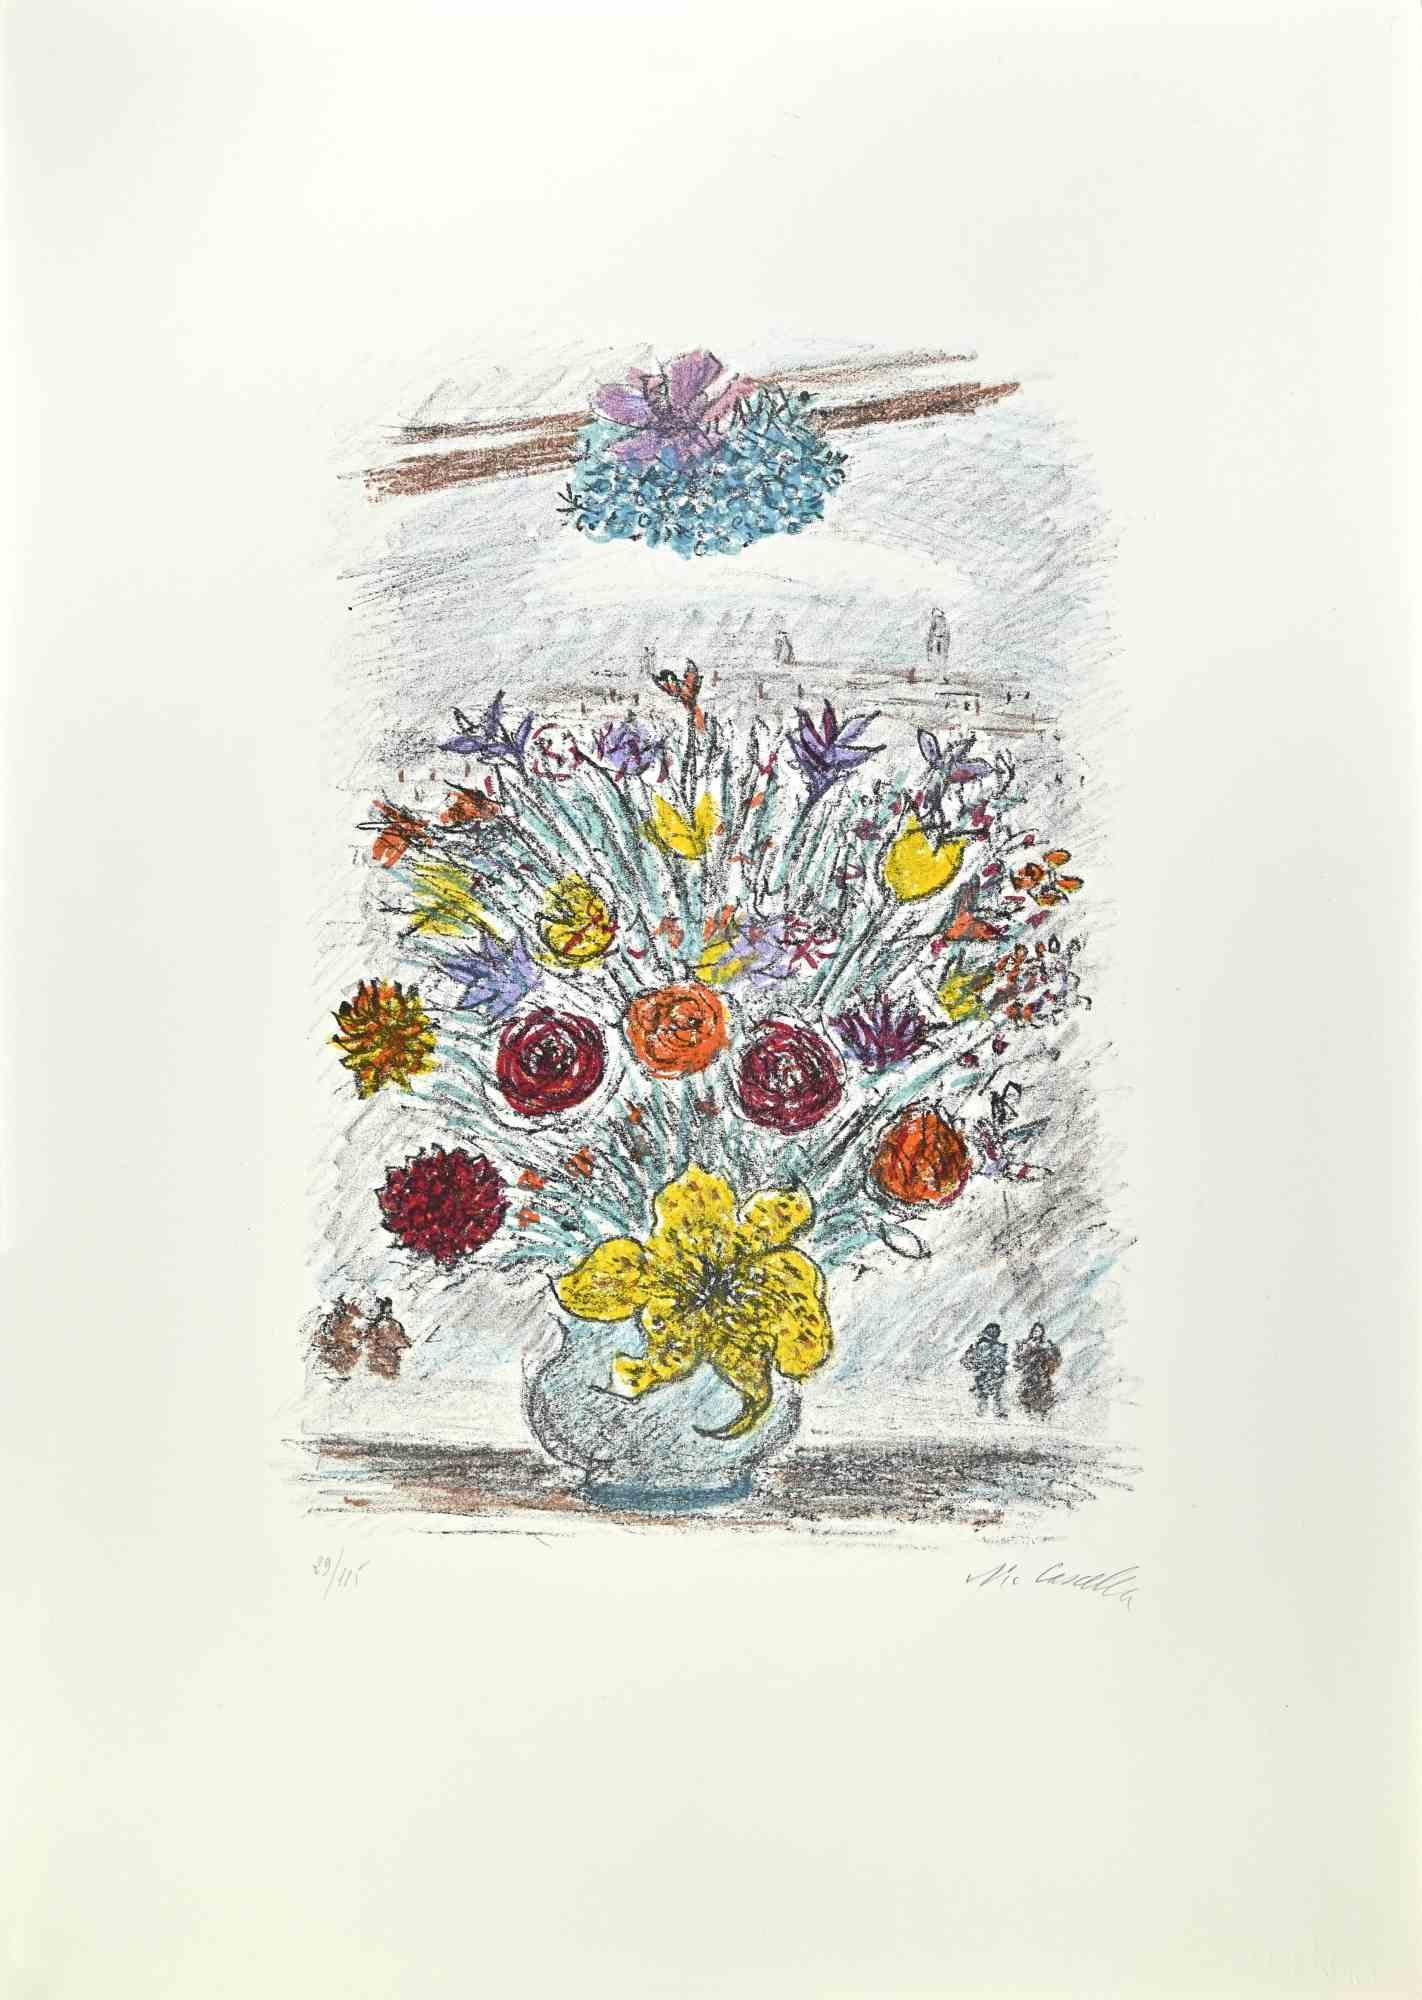 Scilla est une œuvre d'art réalisée en 1979 par l'artiste italien Michele Cascella.

Lithographie en couleurs sur papier du Portfolio "Landscape", 1979, avec six lithographies originales et les poèmes de Franco Simongini intitulés "Twenty Landscapes